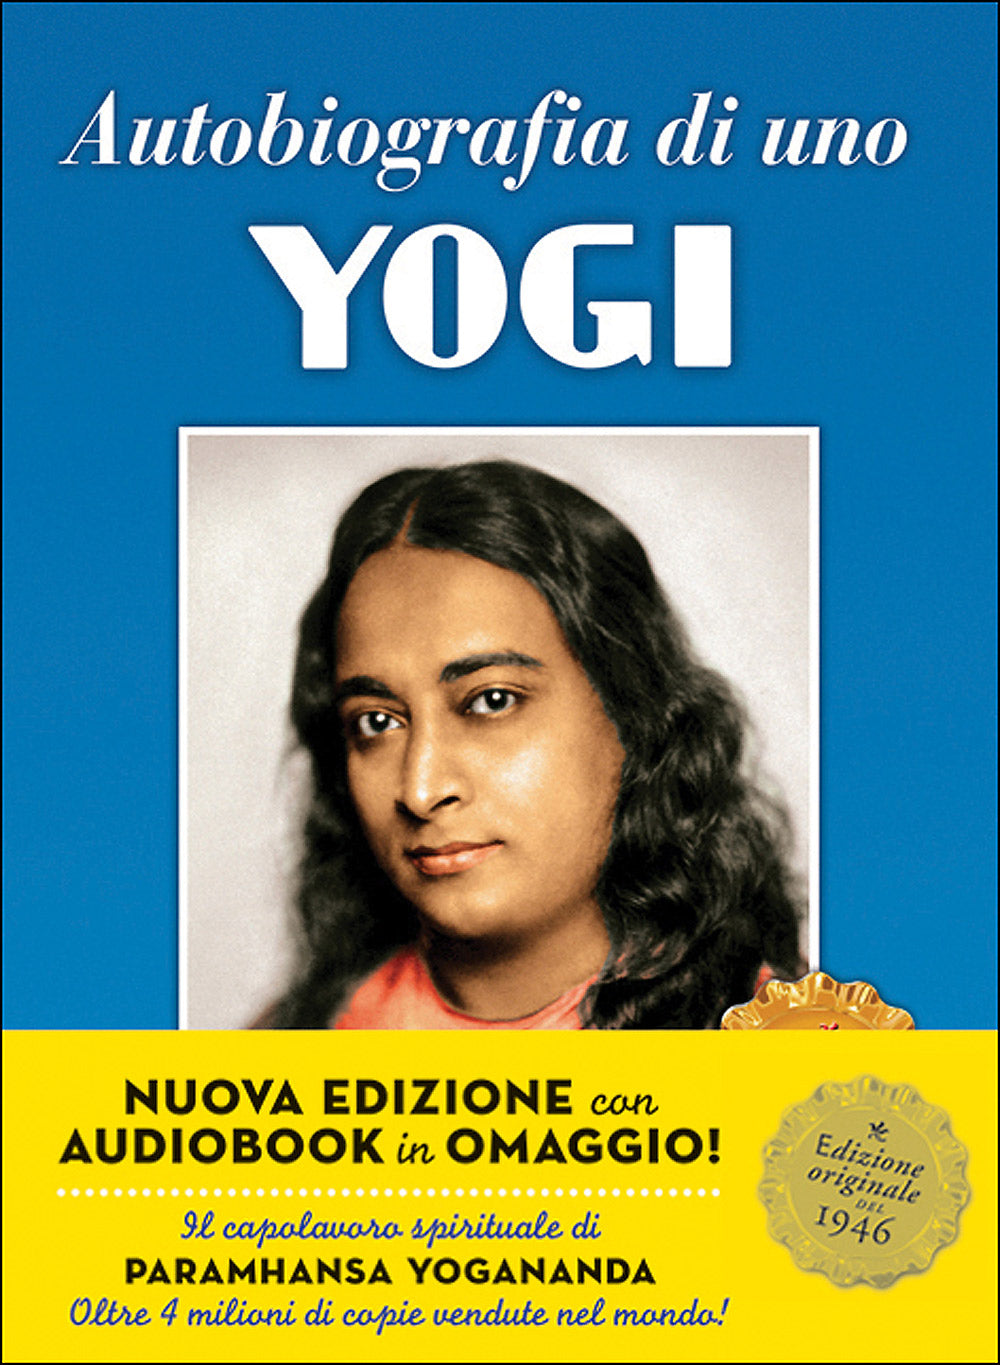 Autobiografia di uno Yogi + CD::Nuova edizione con audiobook in omaggio! - Edizione originale del 1946